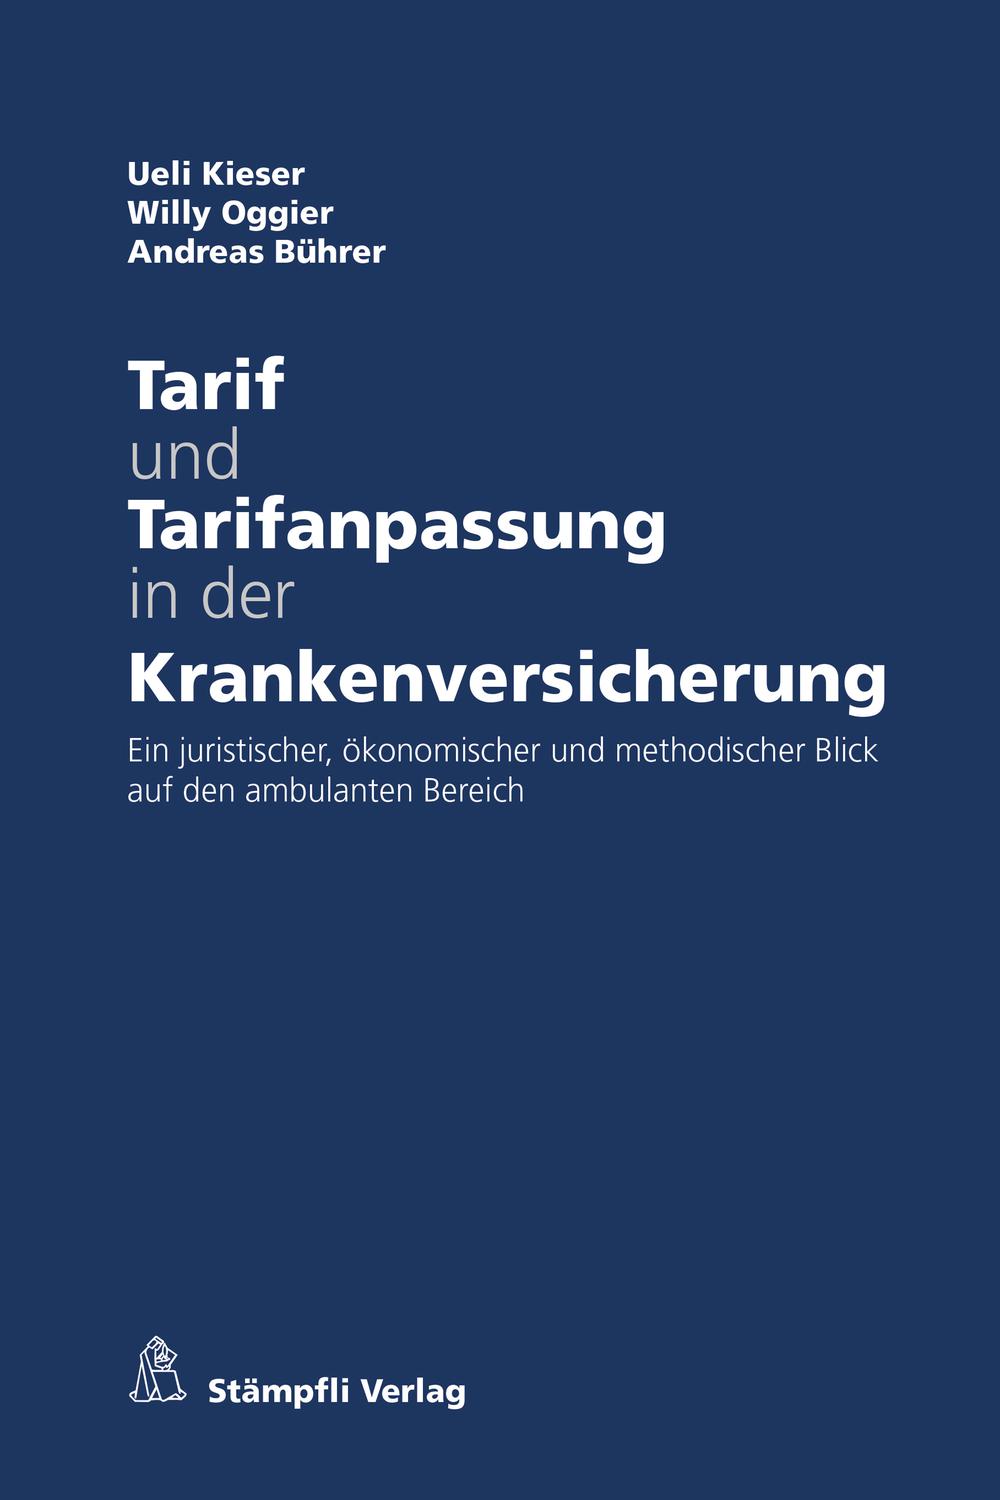 Tarif und Tarifanpassung in der Krankenversicherung - Ueli Kieser, Willy Oggier, Andreas Bührer